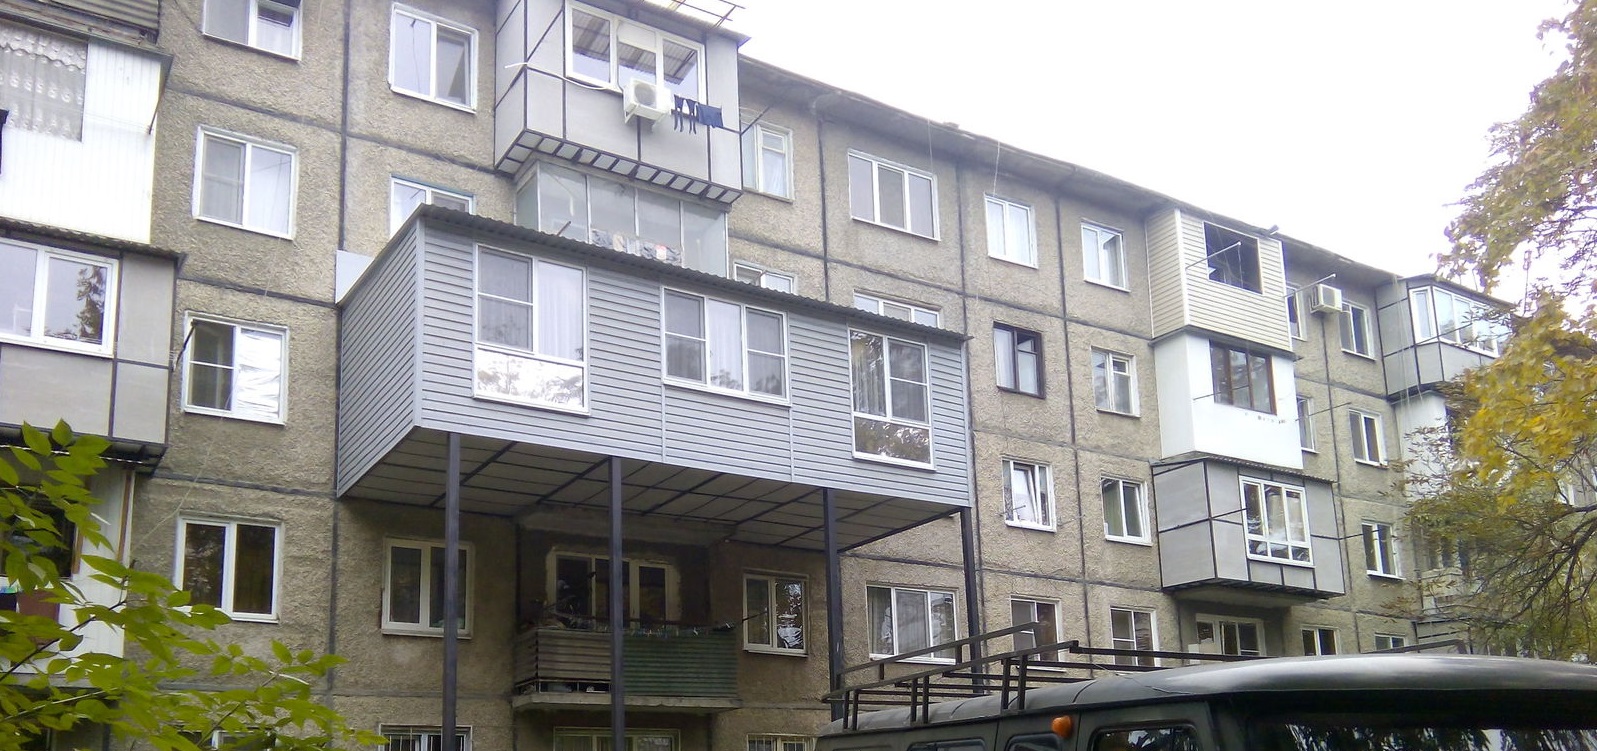  Застеклённые балконы теперь под запретом: заставят снять и не разрешат сделать заново  